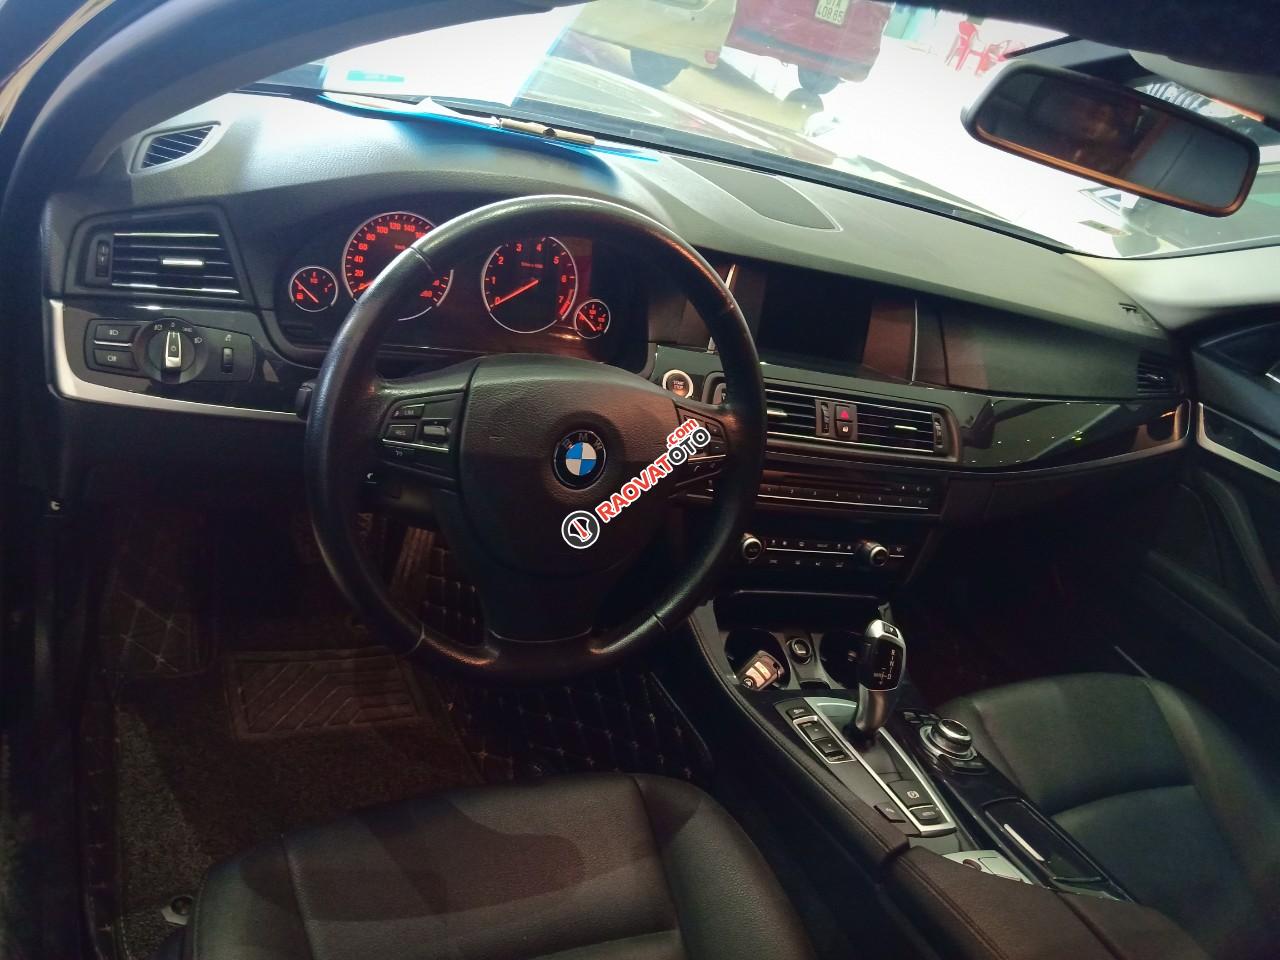 Cần bán BMW 520i đời 2014 2.0 AT xe nhập khẩu nguyên chiếc tại Đức, odo: 53.000 km, màu đen, xe đẹp-4